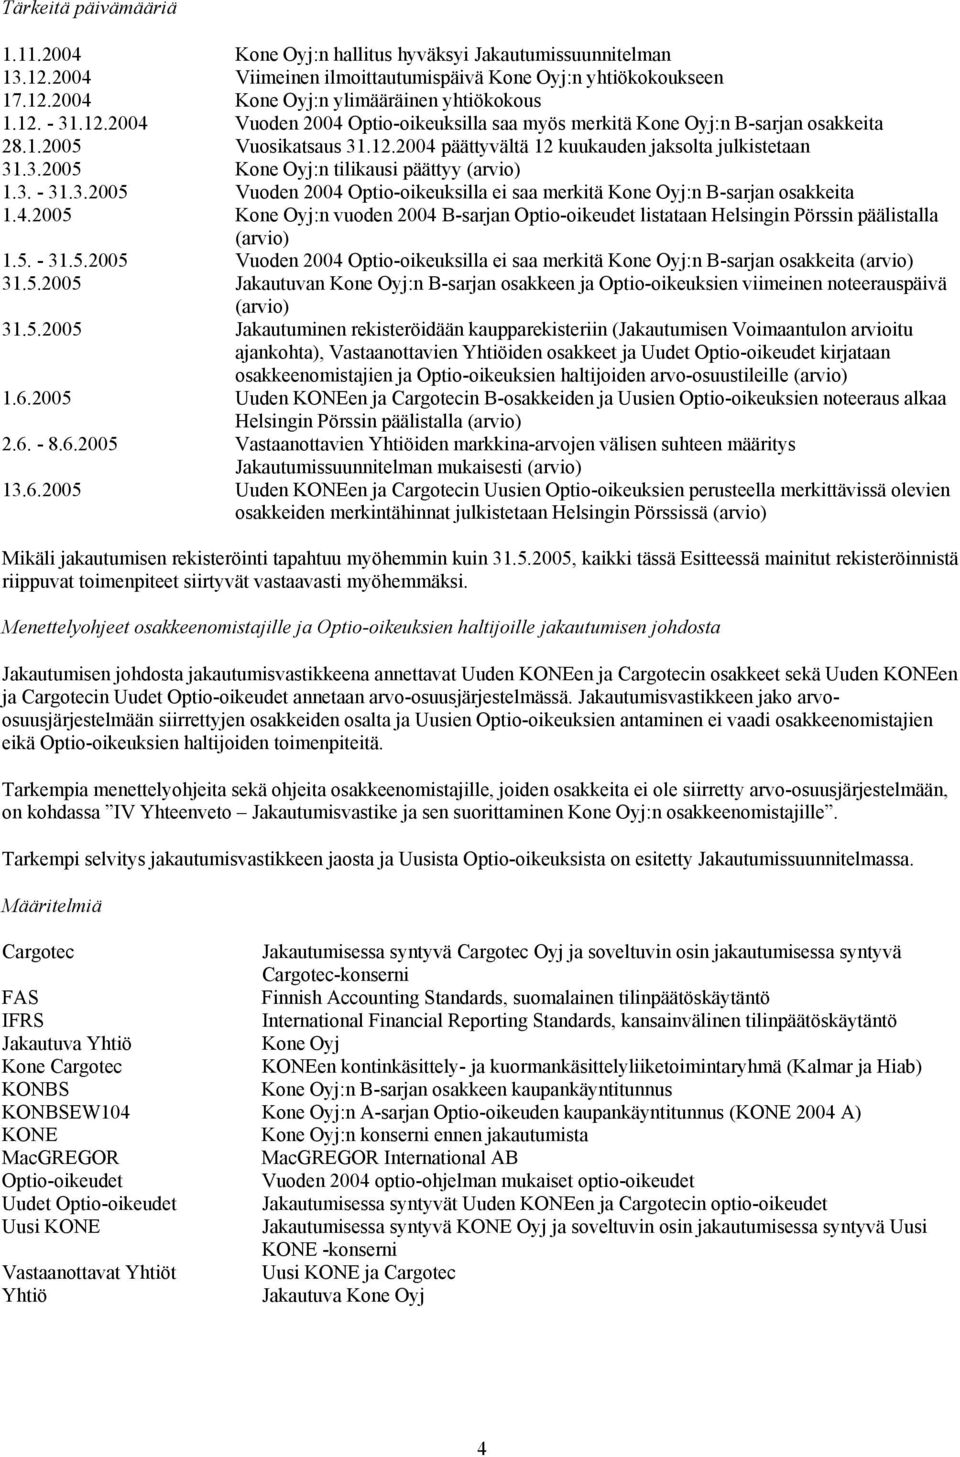 3. - 31.3.2005 Vuoden 2004 Optio-oikeuksilla ei saa merkitä Kone Oyj:n B-sarjan osakkeita 1.4.2005 Kone Oyj:n vuoden 2004 B-sarjan Optio-oikeudet listataan Helsingin Pörssin päälistalla (arvio) 1.5. - 31.5.2005 Vuoden 2004 Optio-oikeuksilla ei saa merkitä Kone Oyj:n B-sarjan osakkeita (arvio) 31.